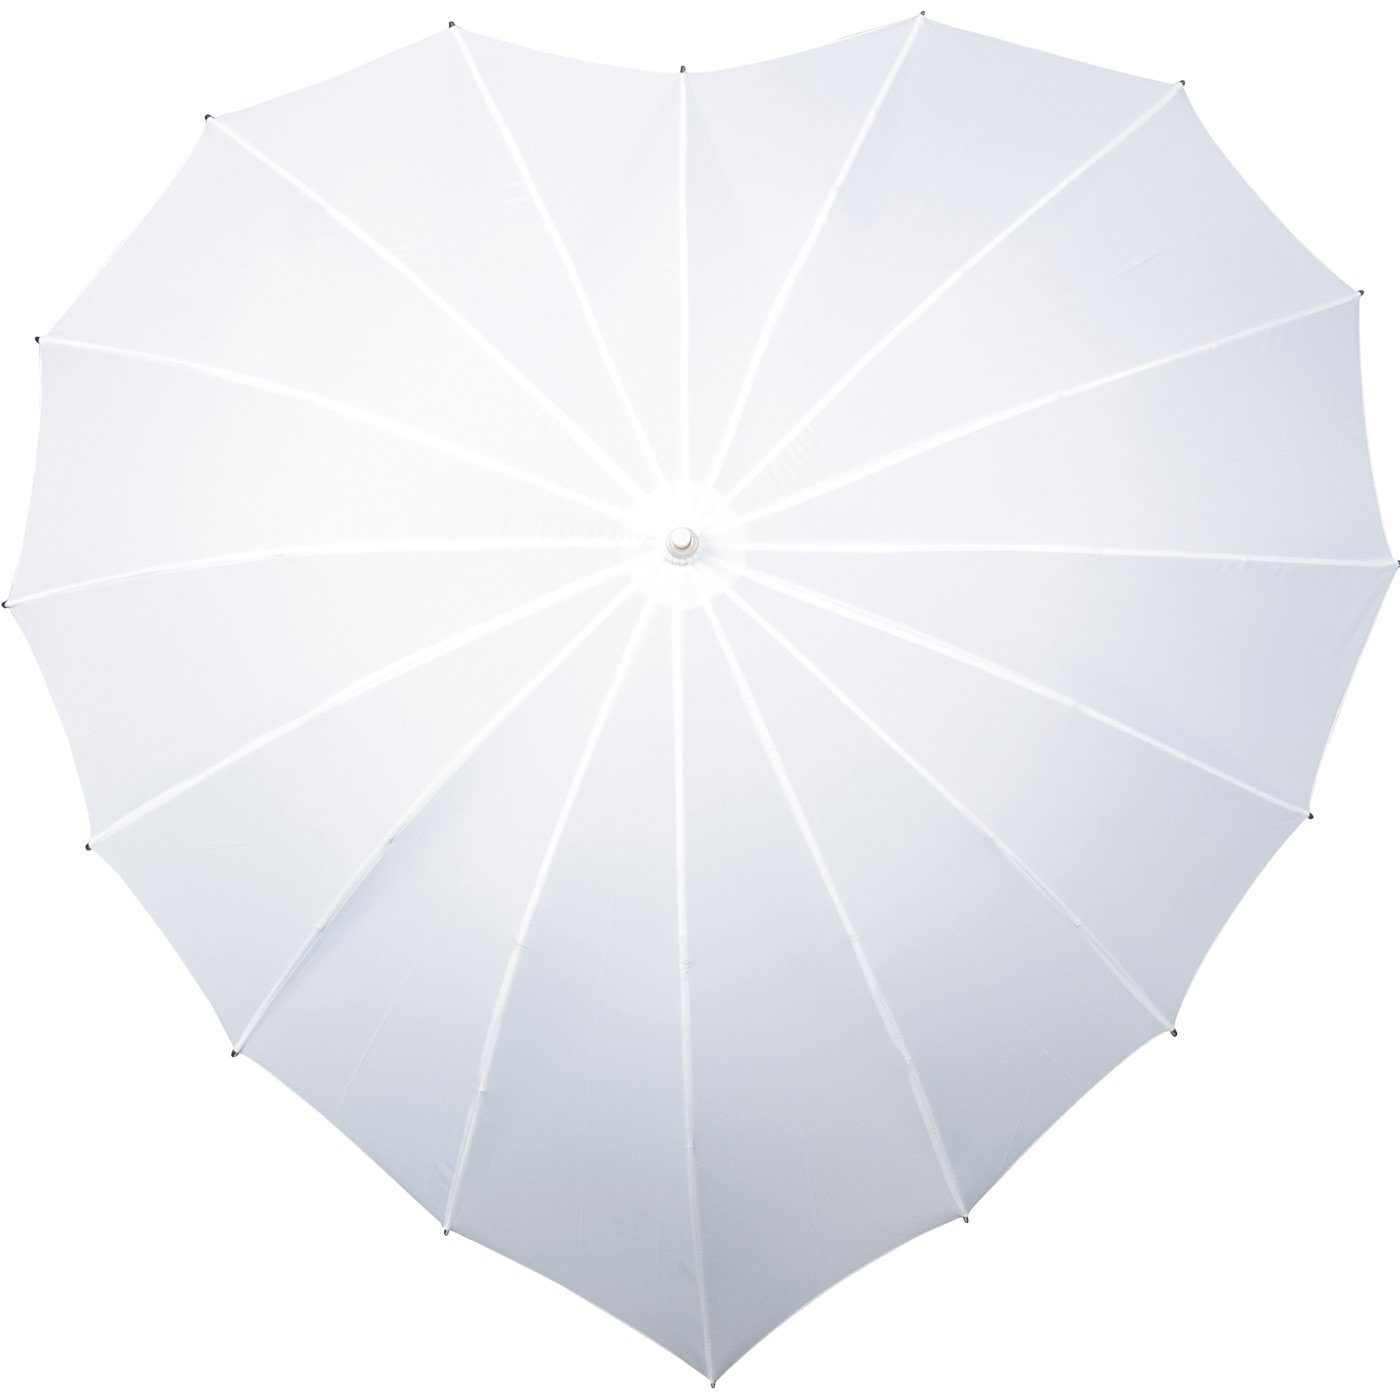 Impliva Langregenschirm Regenschirm herzförmiger Regenschirm 16-teilig in Herzform weiß Hochzeitsschirm